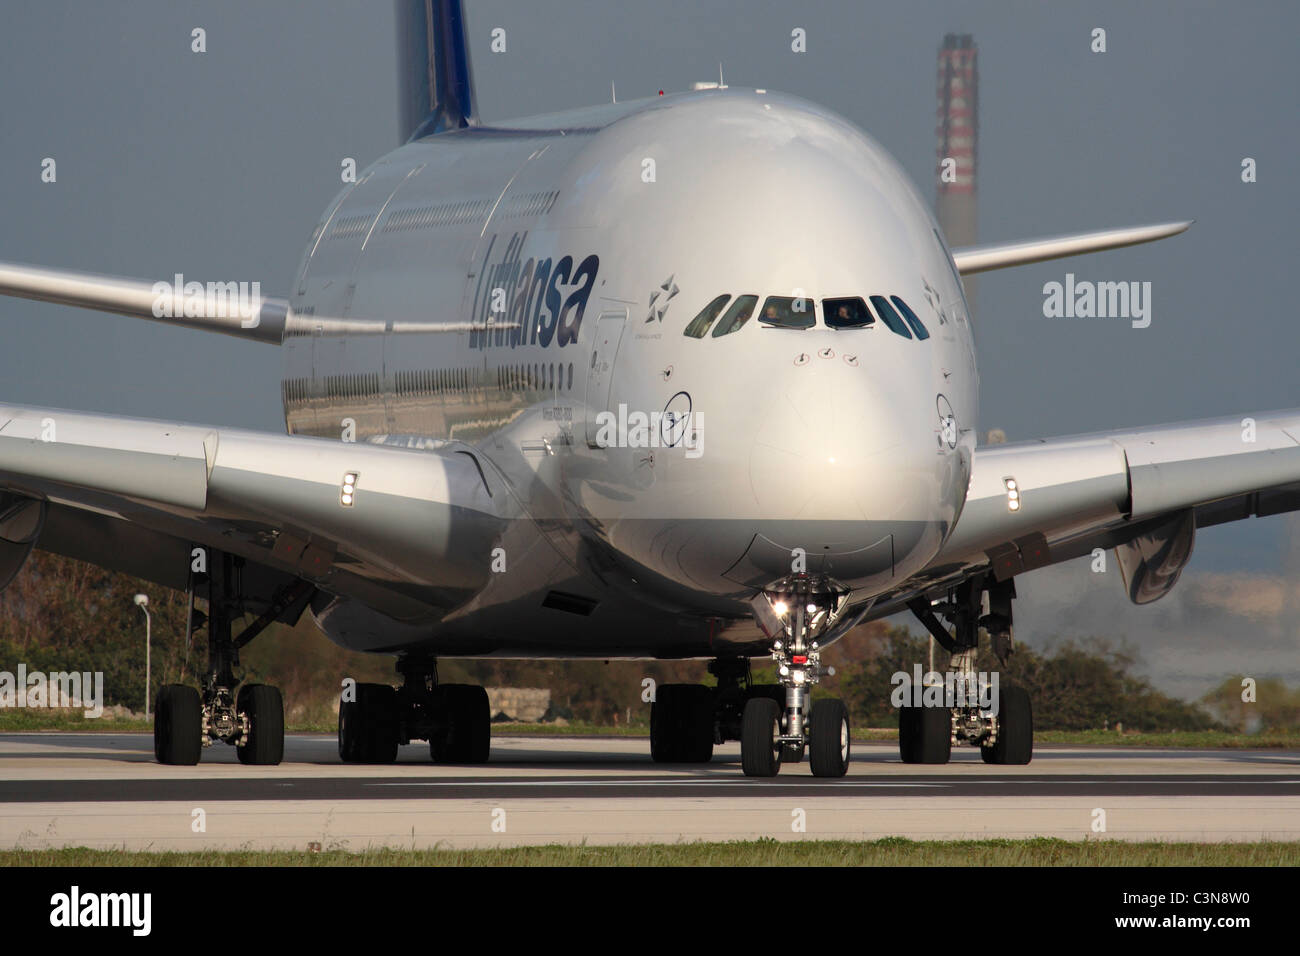 Lufthansa Airbus A380 jet passagers long-courriers de l'alignement de départ de Malte. Libre vue avant l'accent sur l'ampleur de ce plan. Banque D'Images